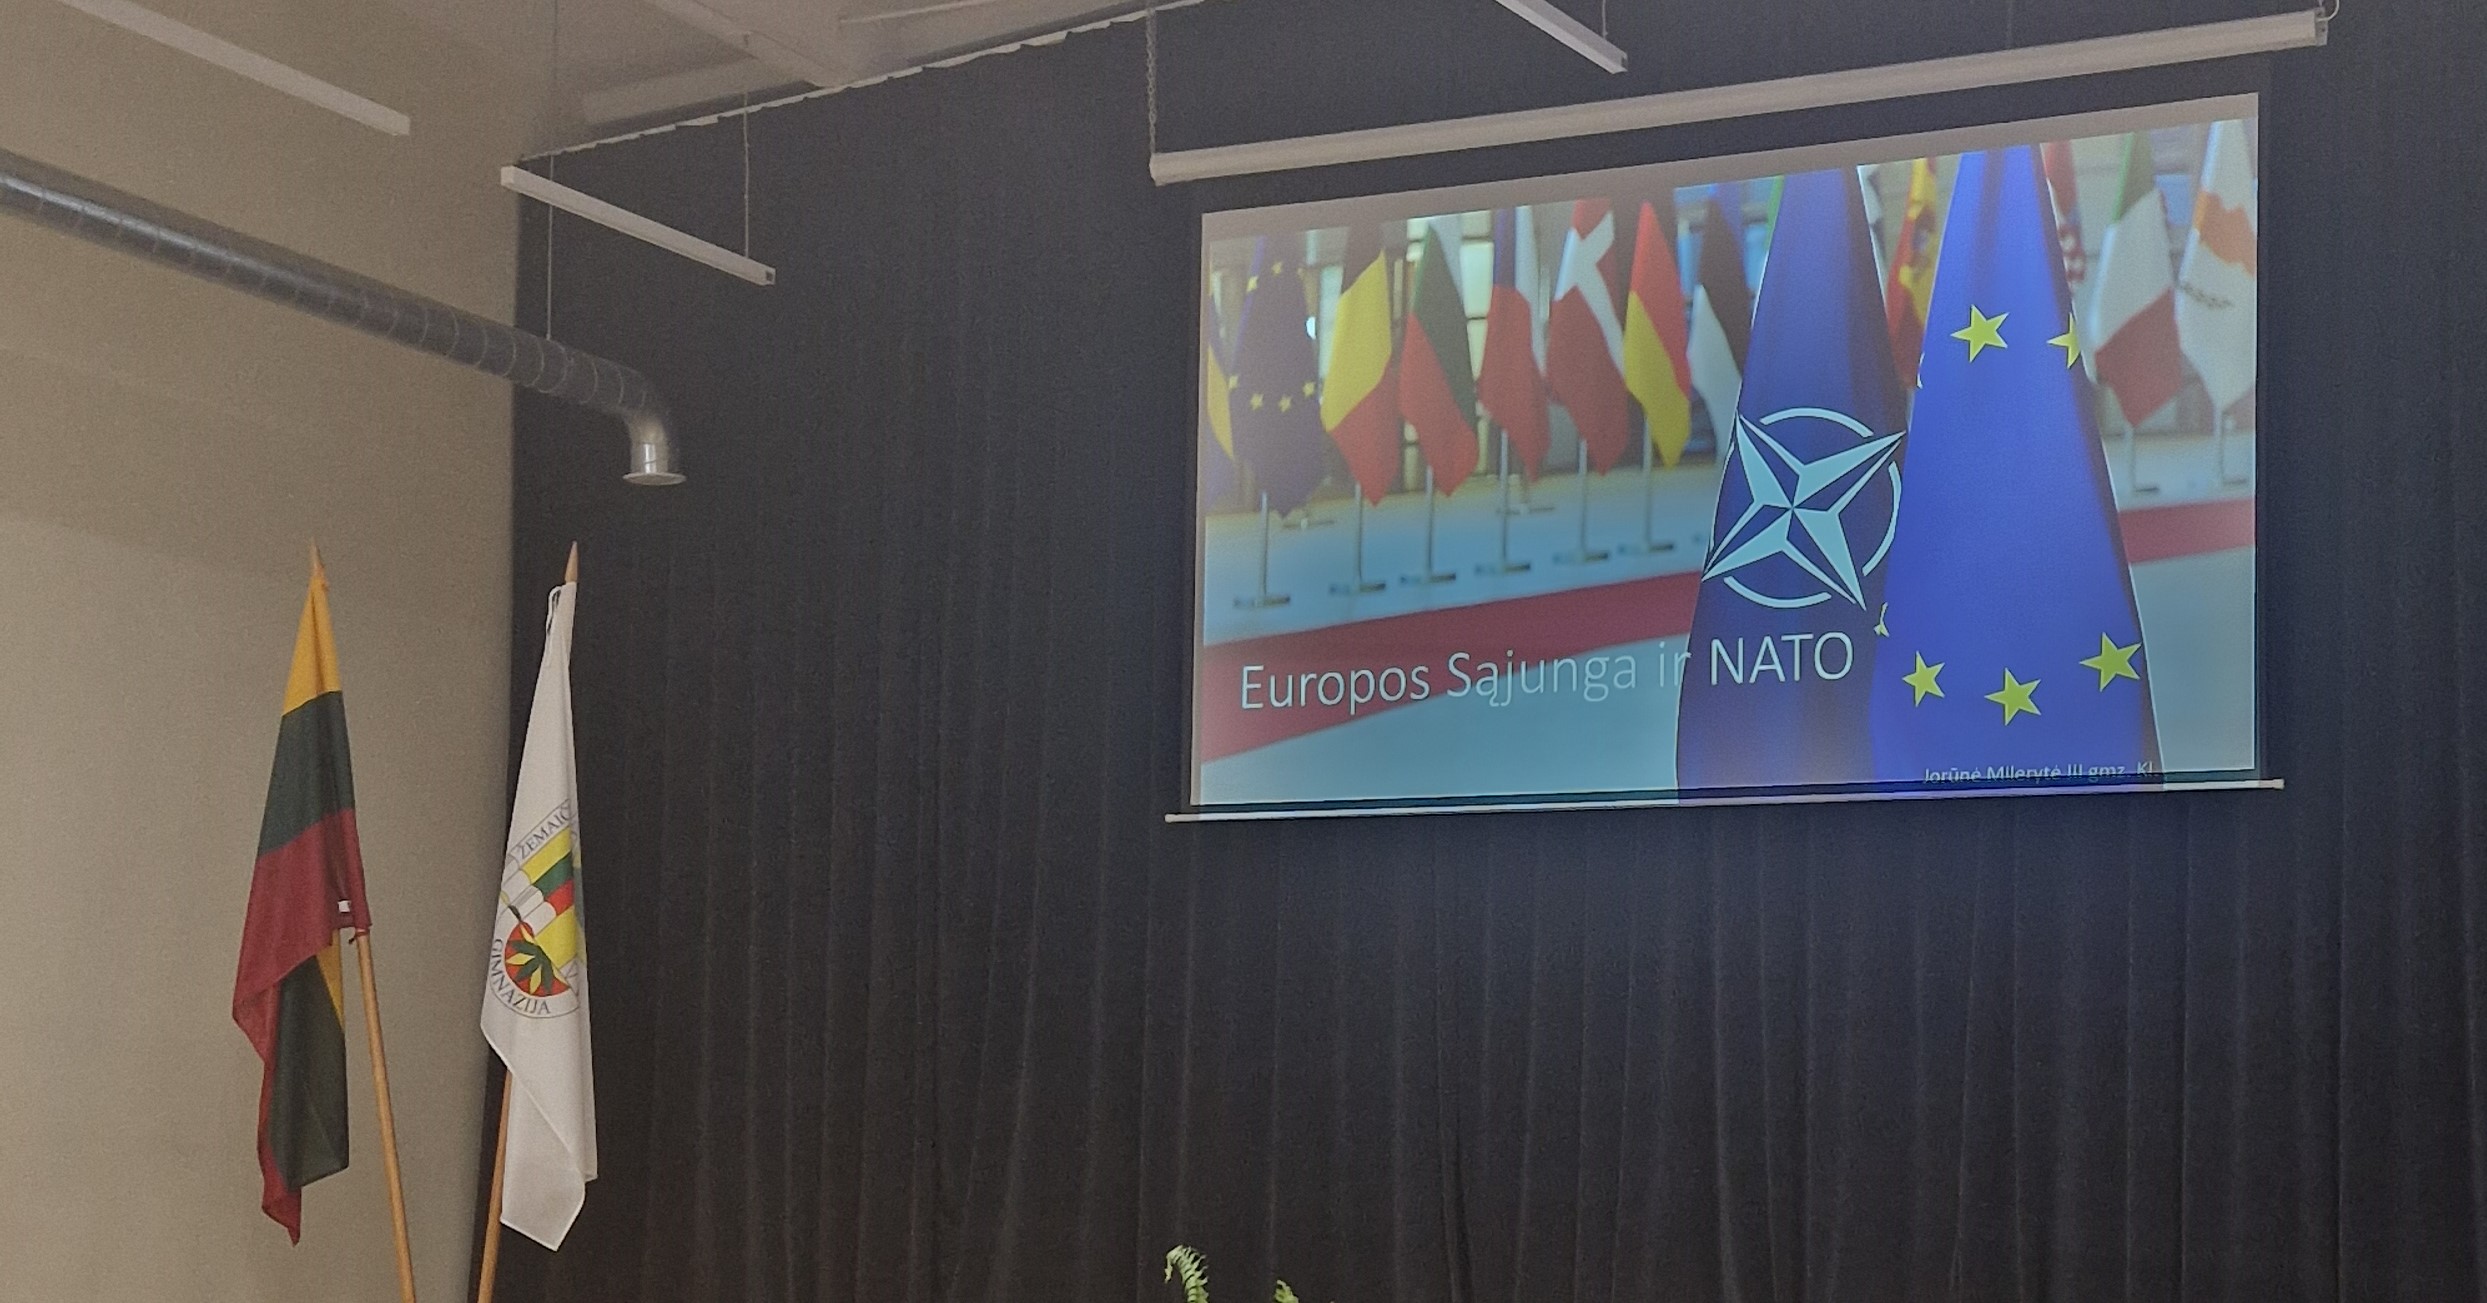 Protmūšis ,,Ką žinai apie Europos Sąjungą ir NATO“